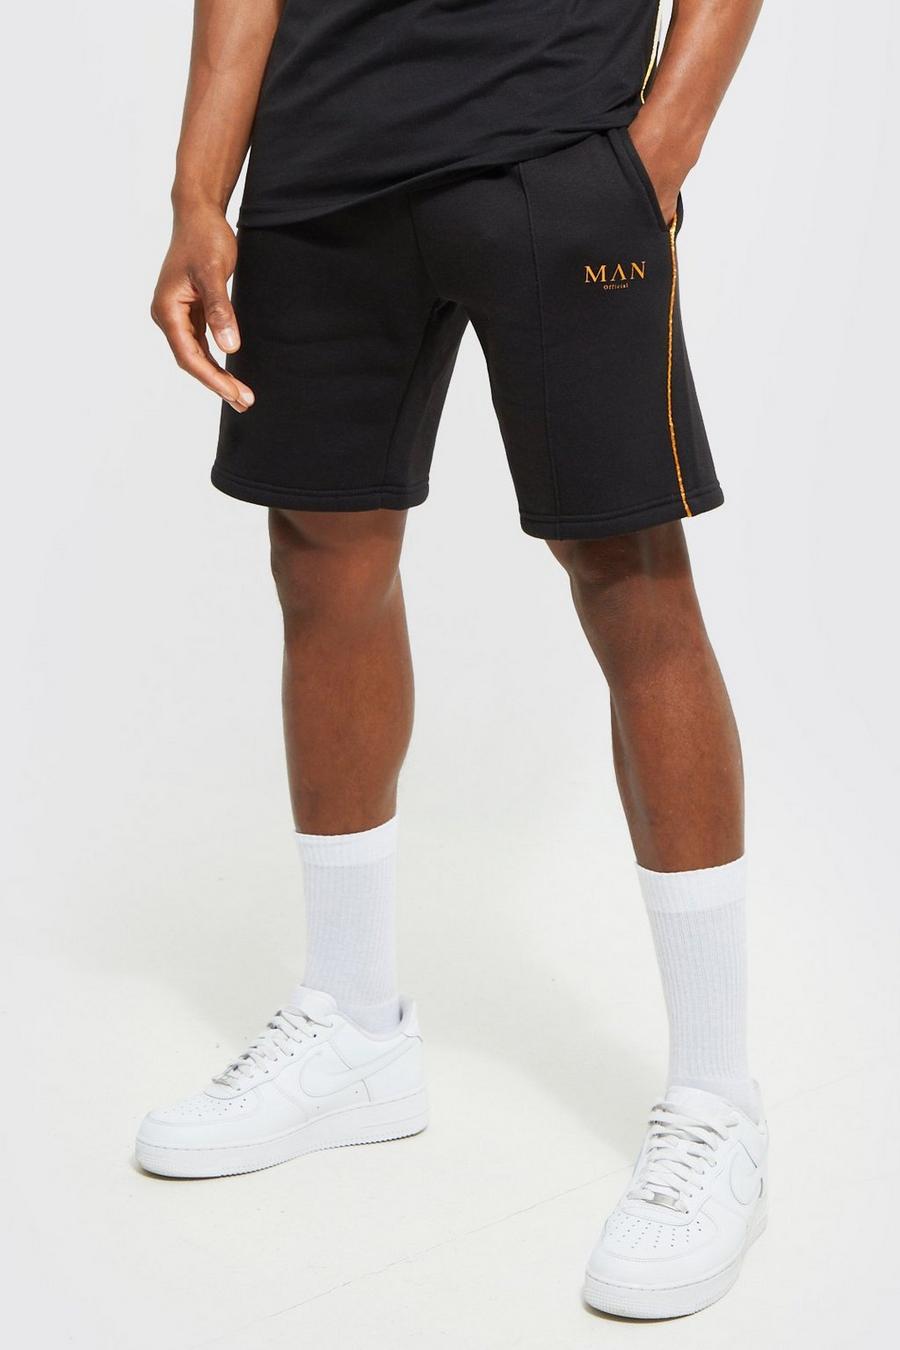 Mittellange Slim-Fit Man Shorts mit Paspeln, Black noir